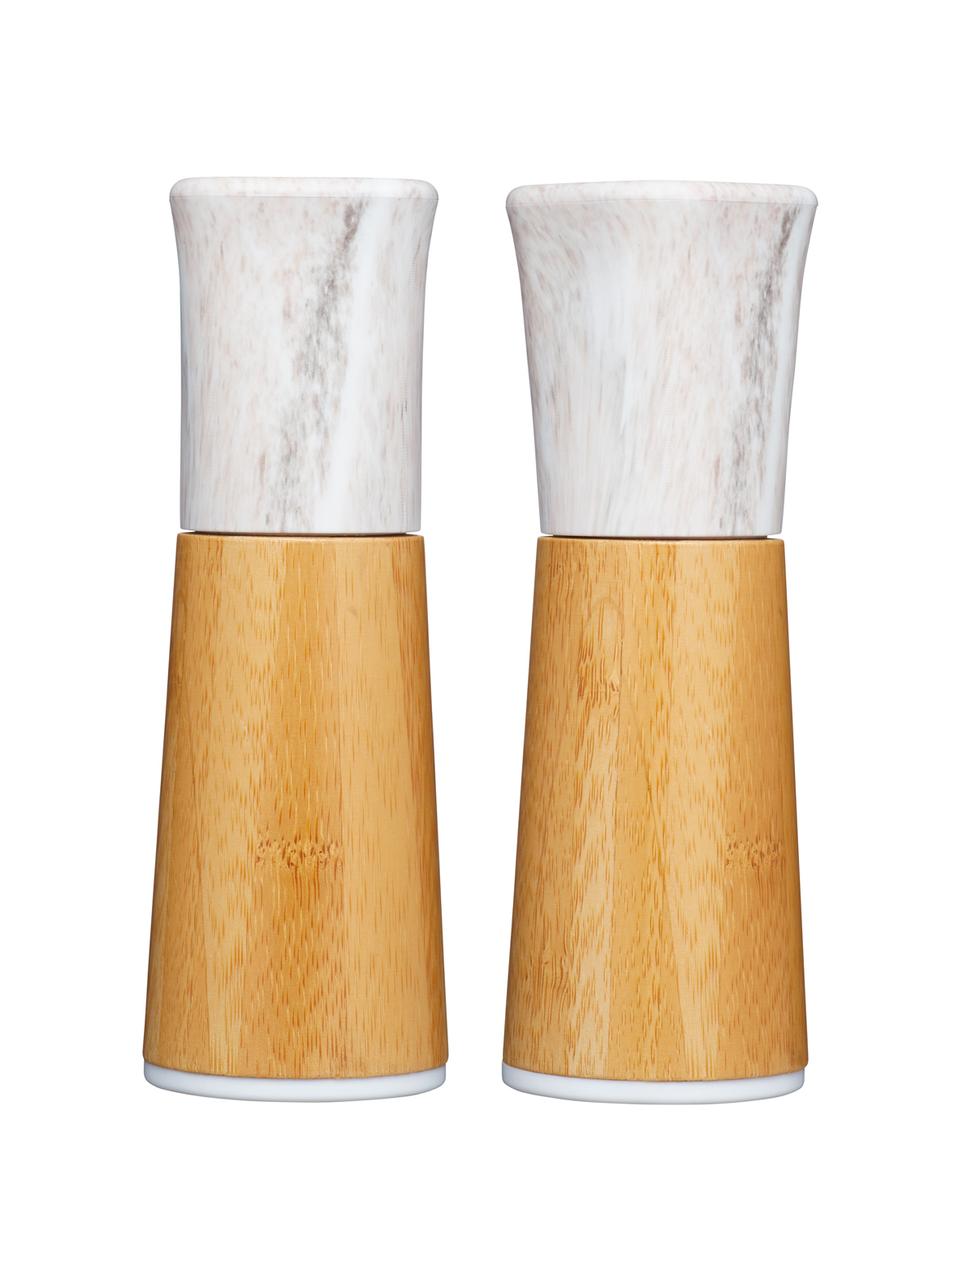 Salz- und Pfeffermühle Dyta, 2er-Set, Gehäuse: Bambus, Kunststoff in Mar, Mahlwerk: Keramik, Bambus, Weiß, marmoriert, Ø 6 x H 18 cm